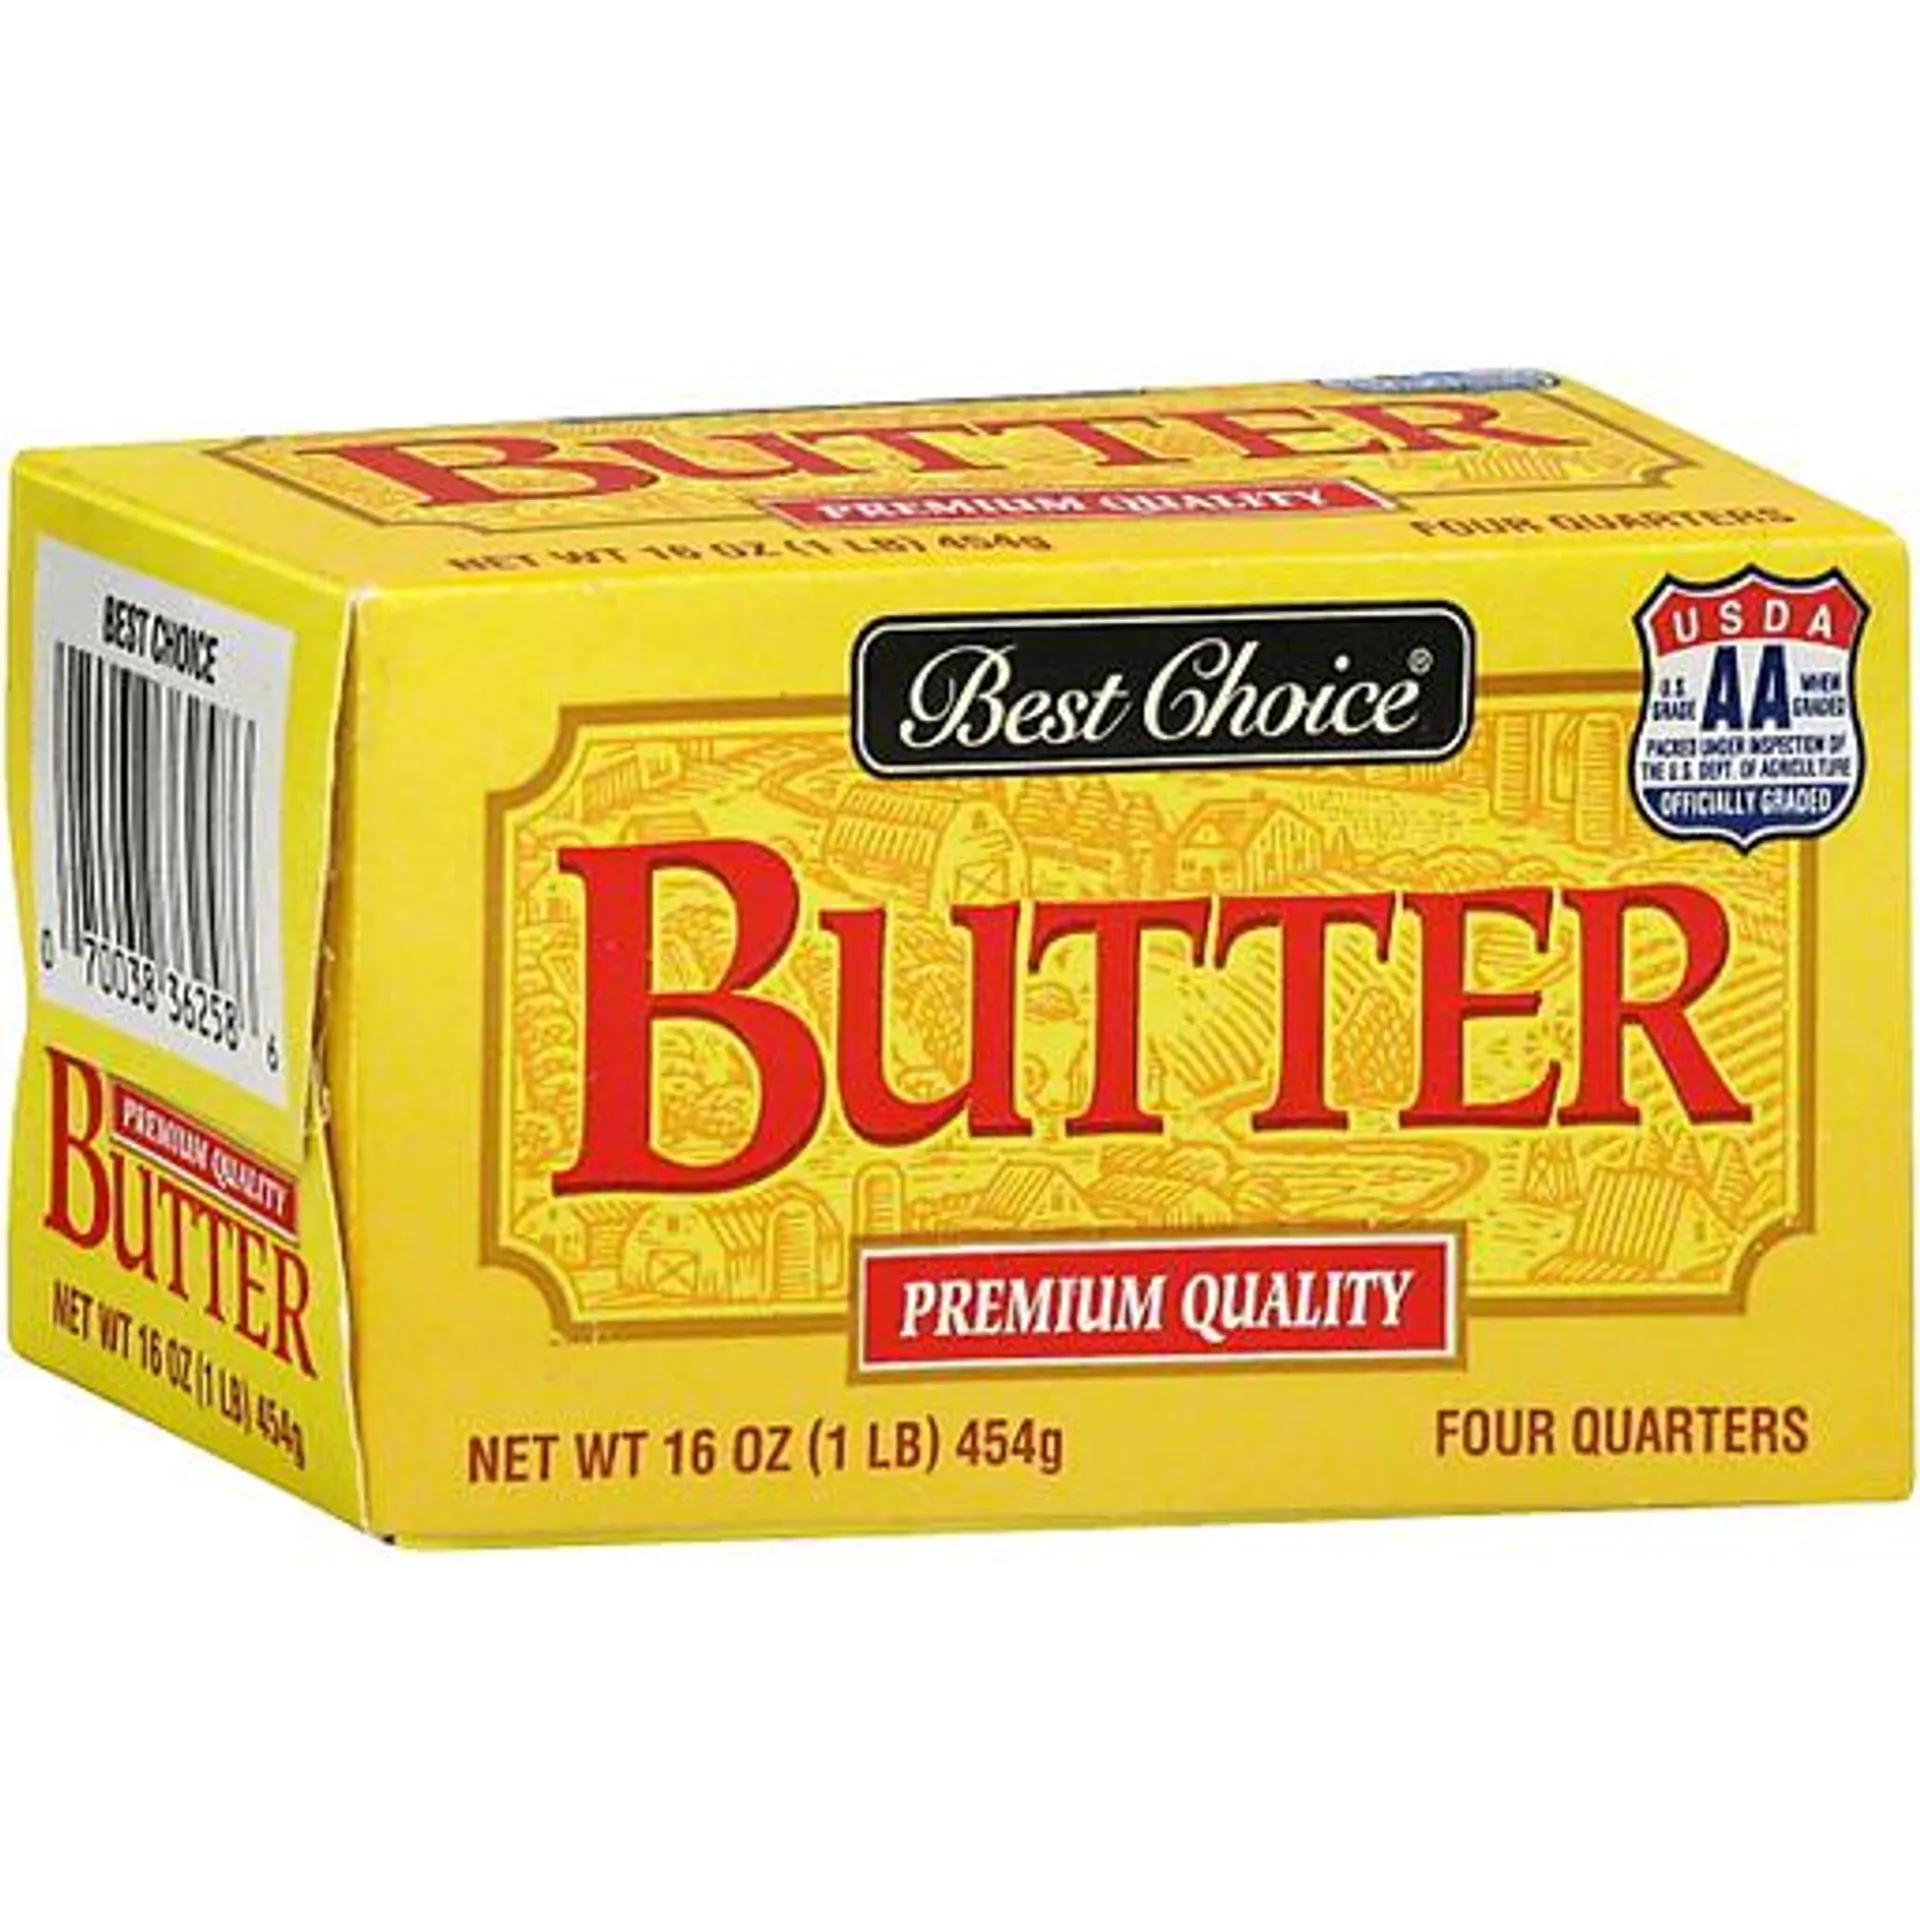 Best Choice Butter Aa Quarters